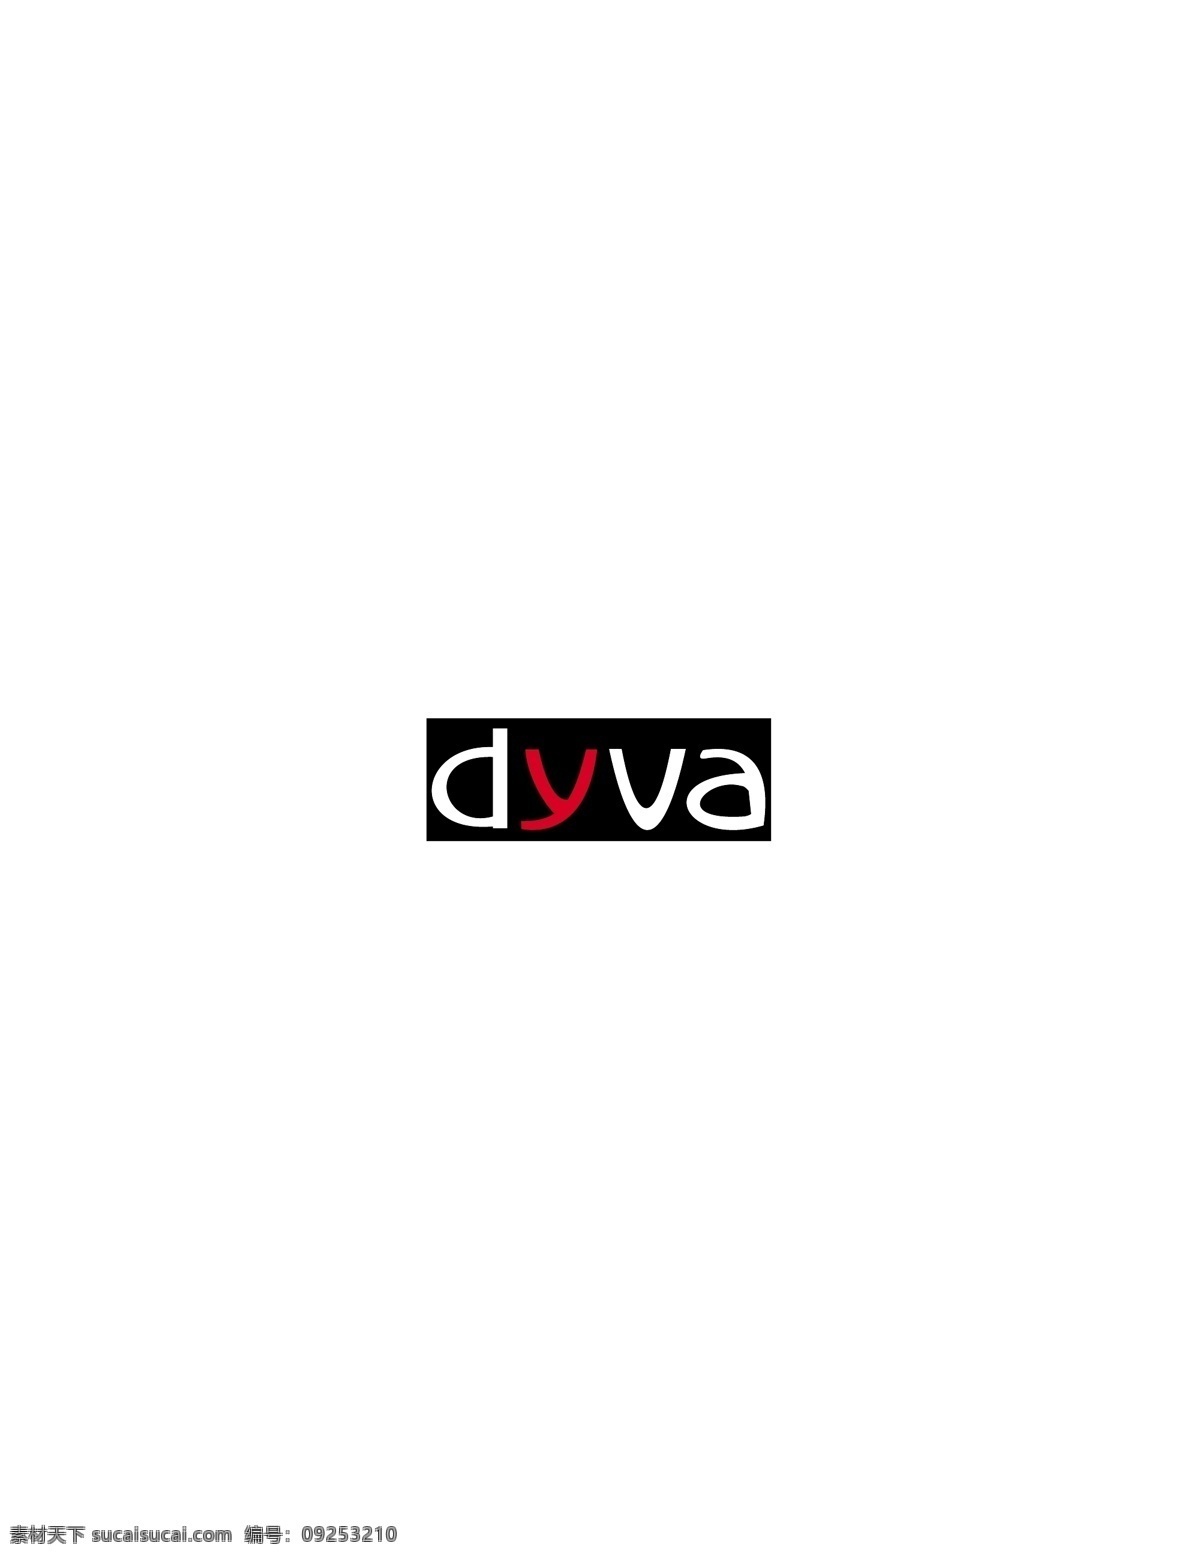 dyva logo大全 logo 设计欣赏 商业矢量 矢量下载 服饰 品牌 标志设计 欣赏 网页矢量 矢量图 其他矢量图